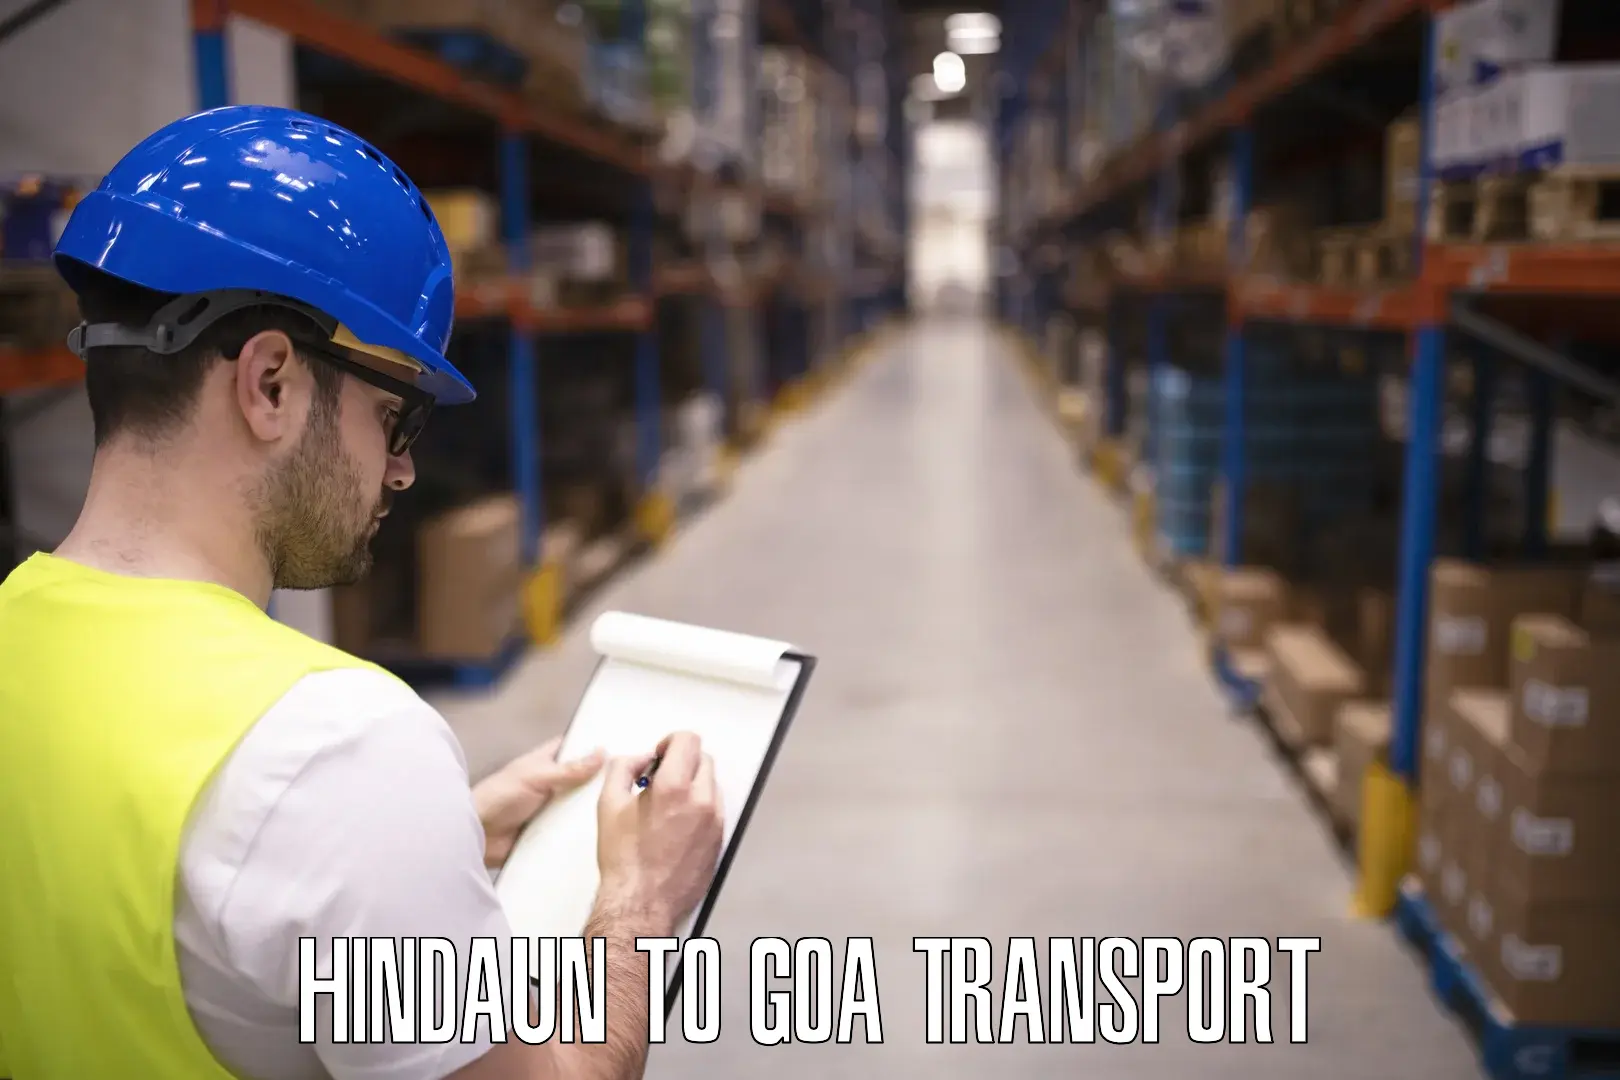 Daily transport service Hindaun to Goa